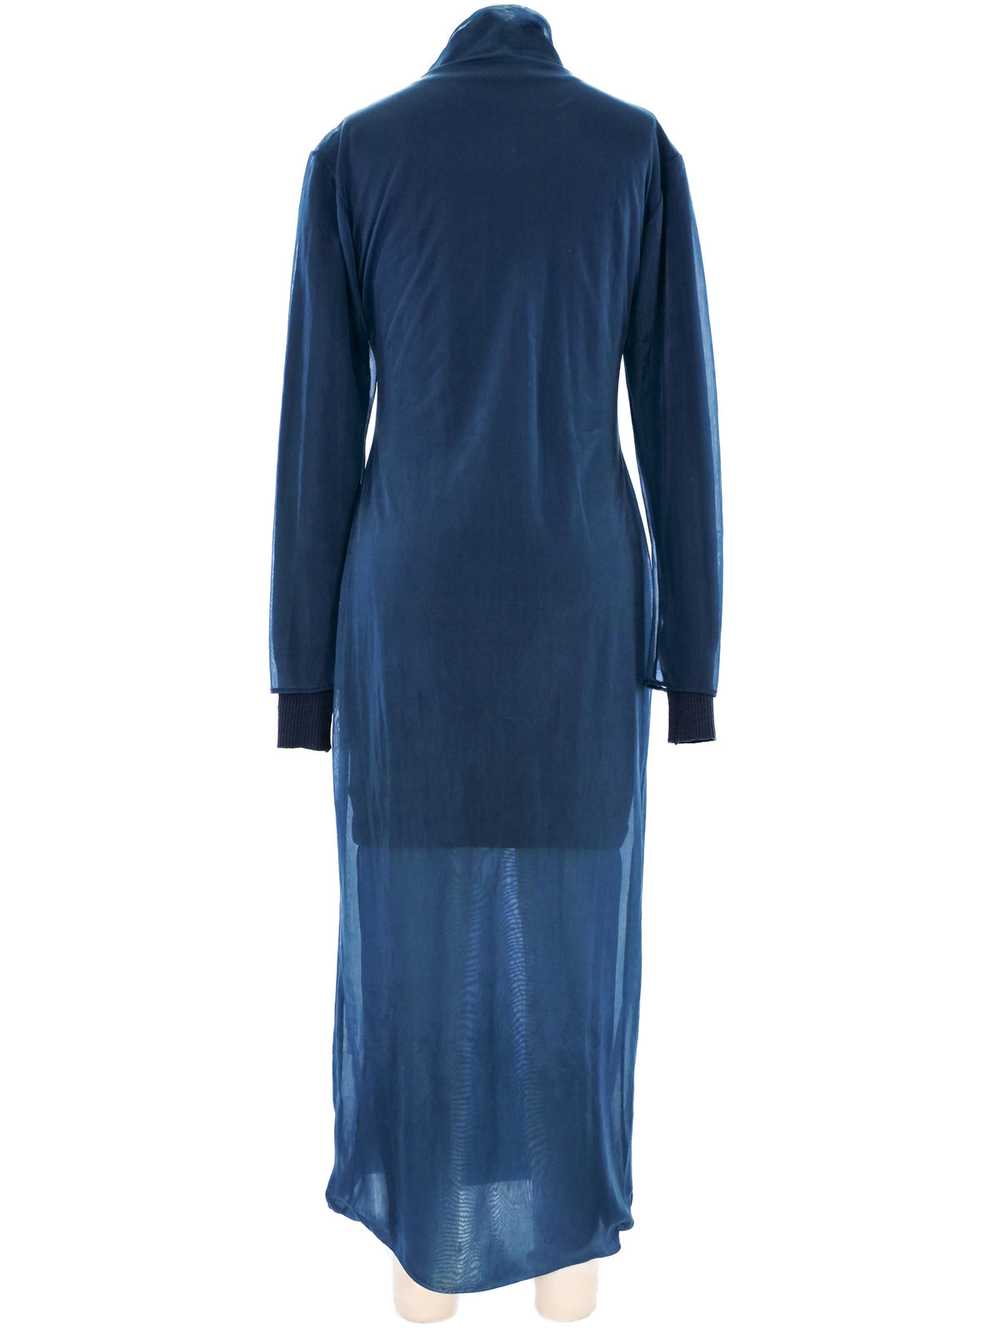 Helmut Lang Navy Layered Chiffon Sweater Dress - image 4